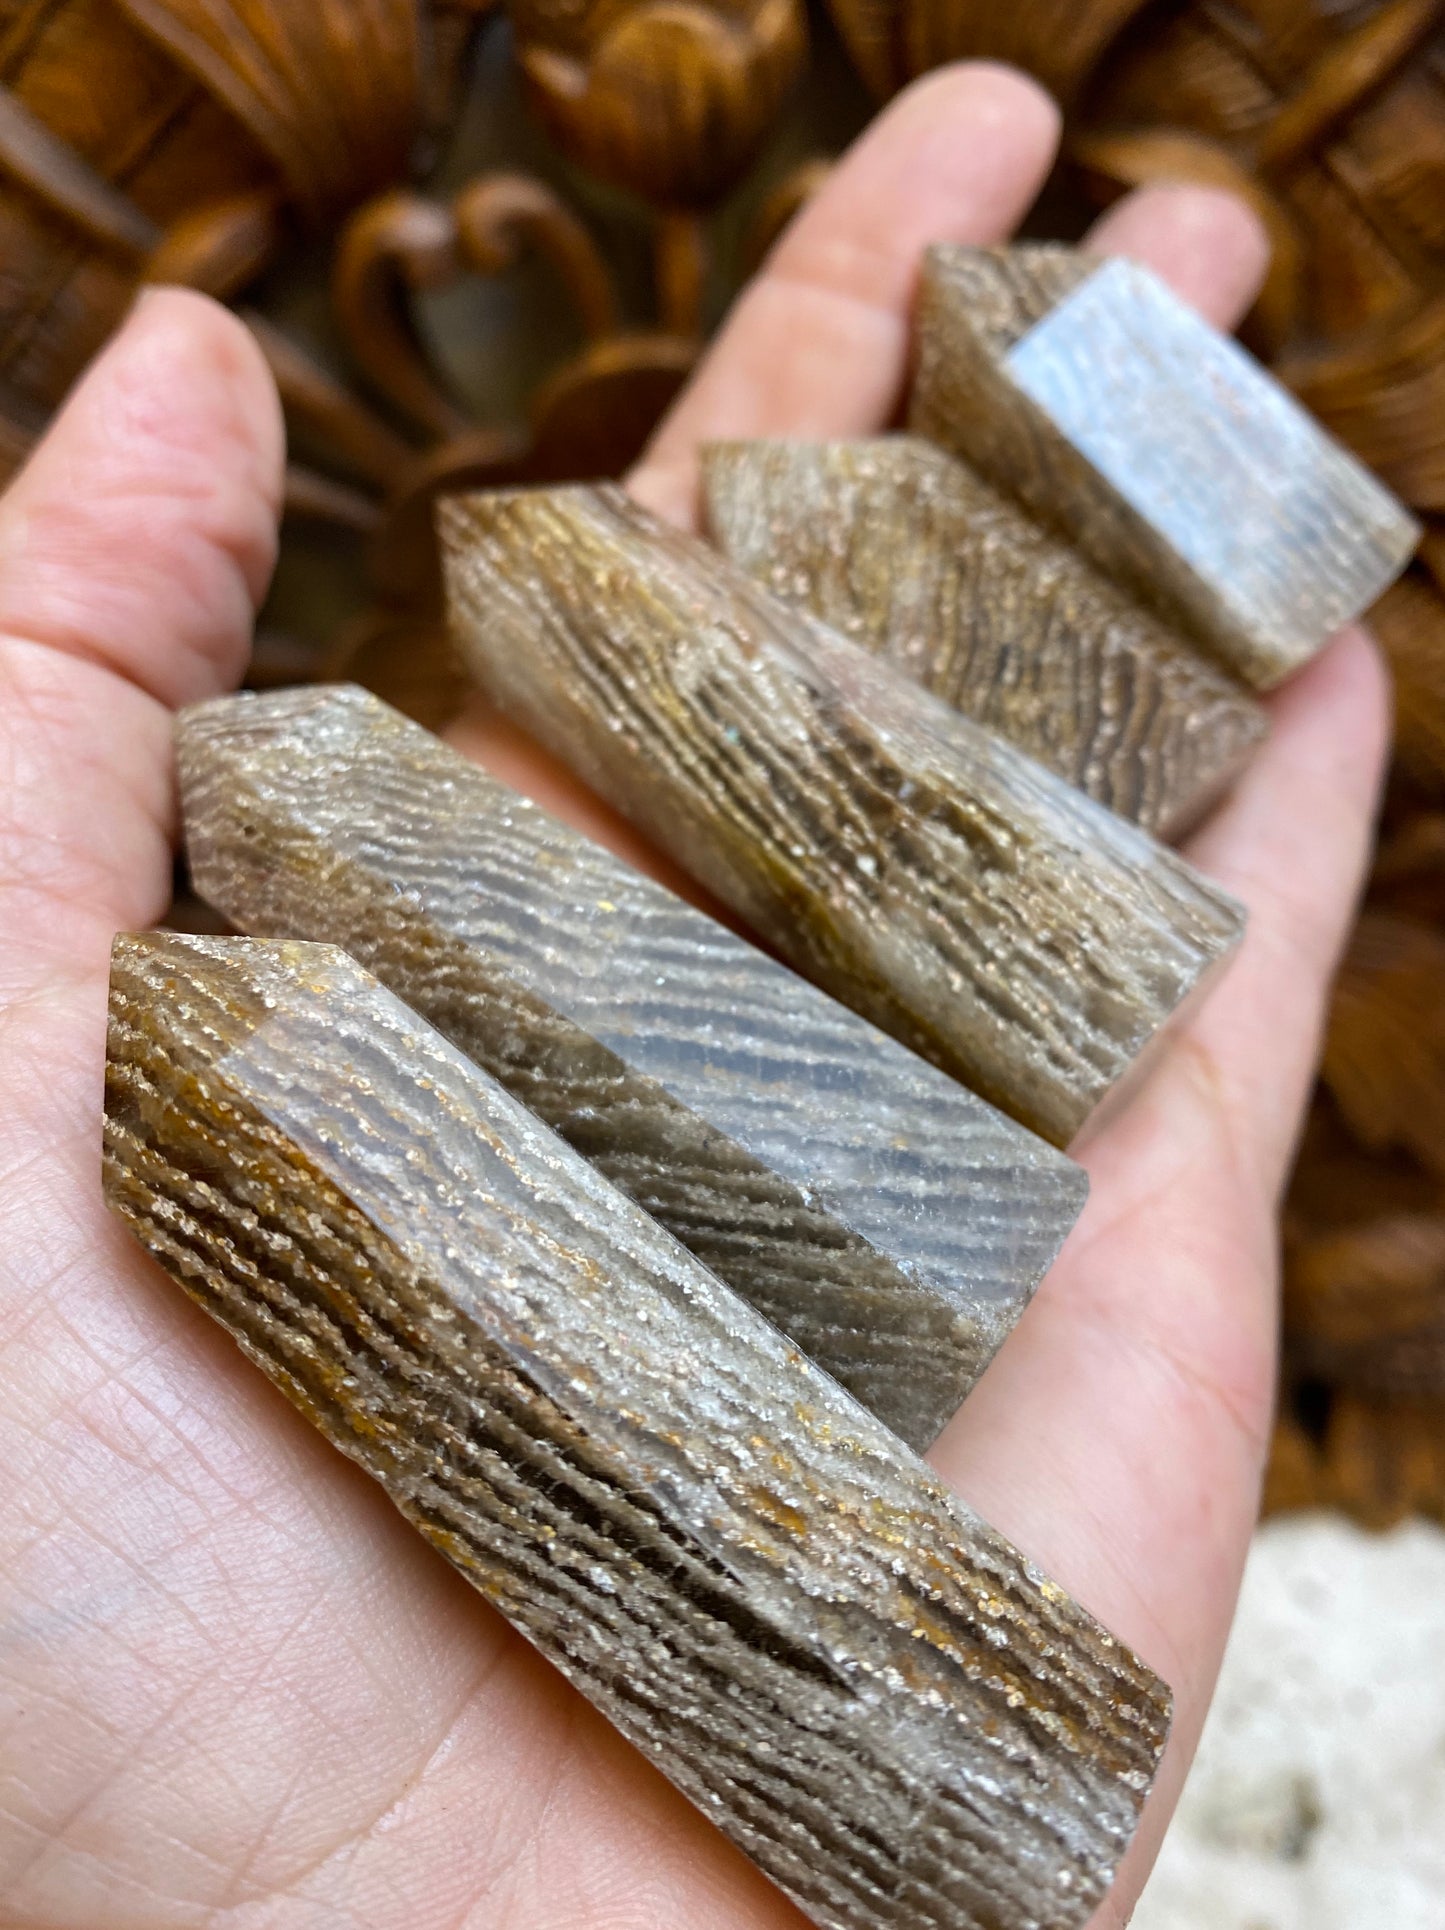 Shamans Quartz Base Cut Quartz Crystal points with Volcanic Ash Inclusions